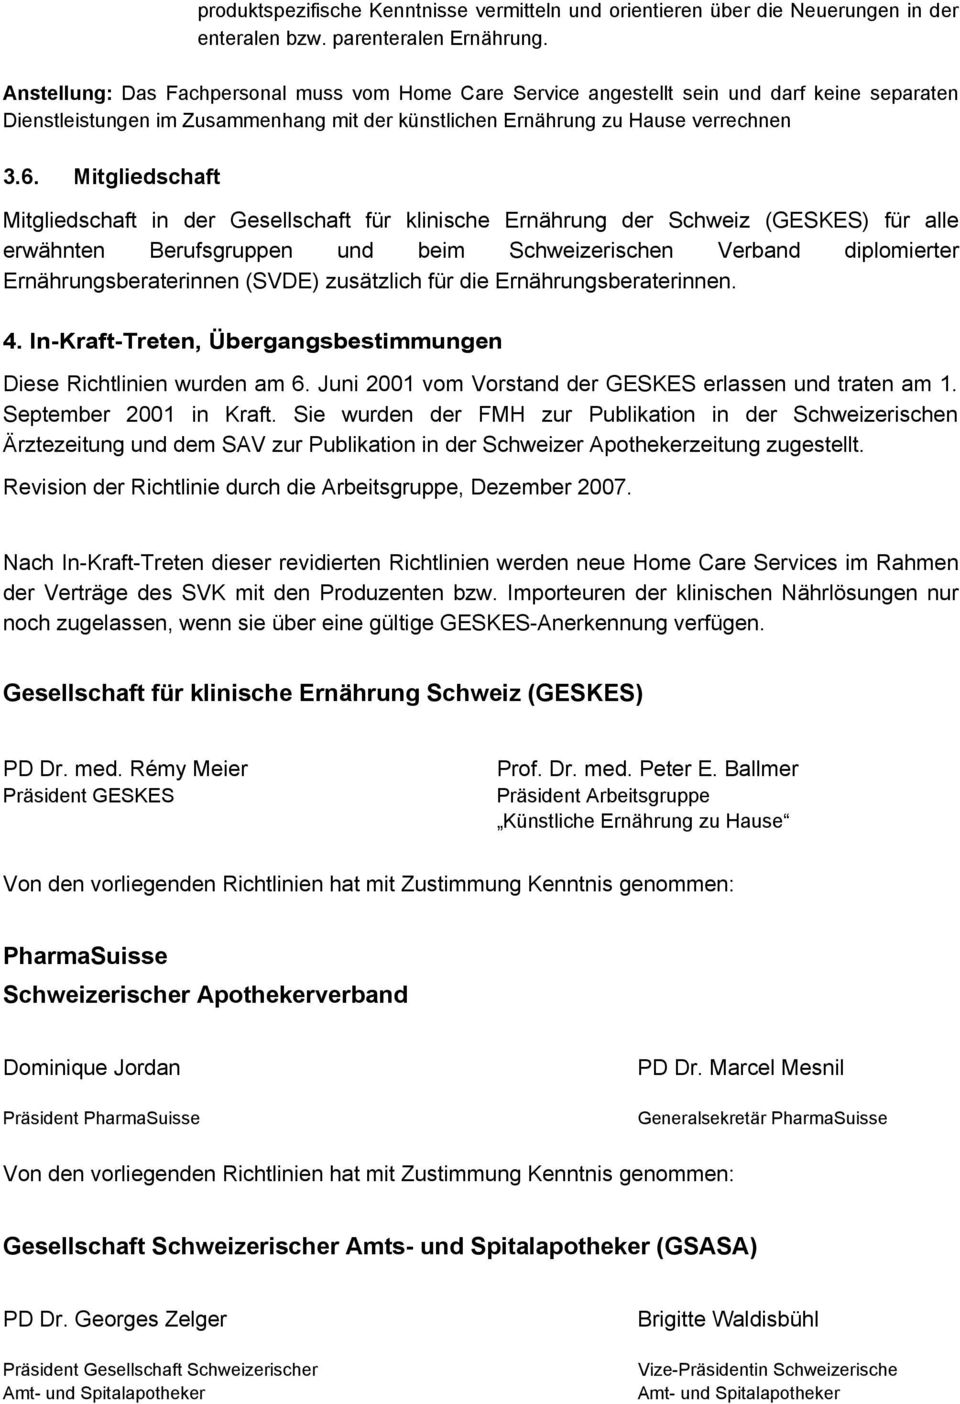 Mitgliedschaft Mitgliedschaft in der Gesellschaft für klinische Ernährung der Schweiz (GESKES) für alle erwähnten Berufsgruppen und beim Schweizerischen Verband diplomierter Ernährungsberaterinnen